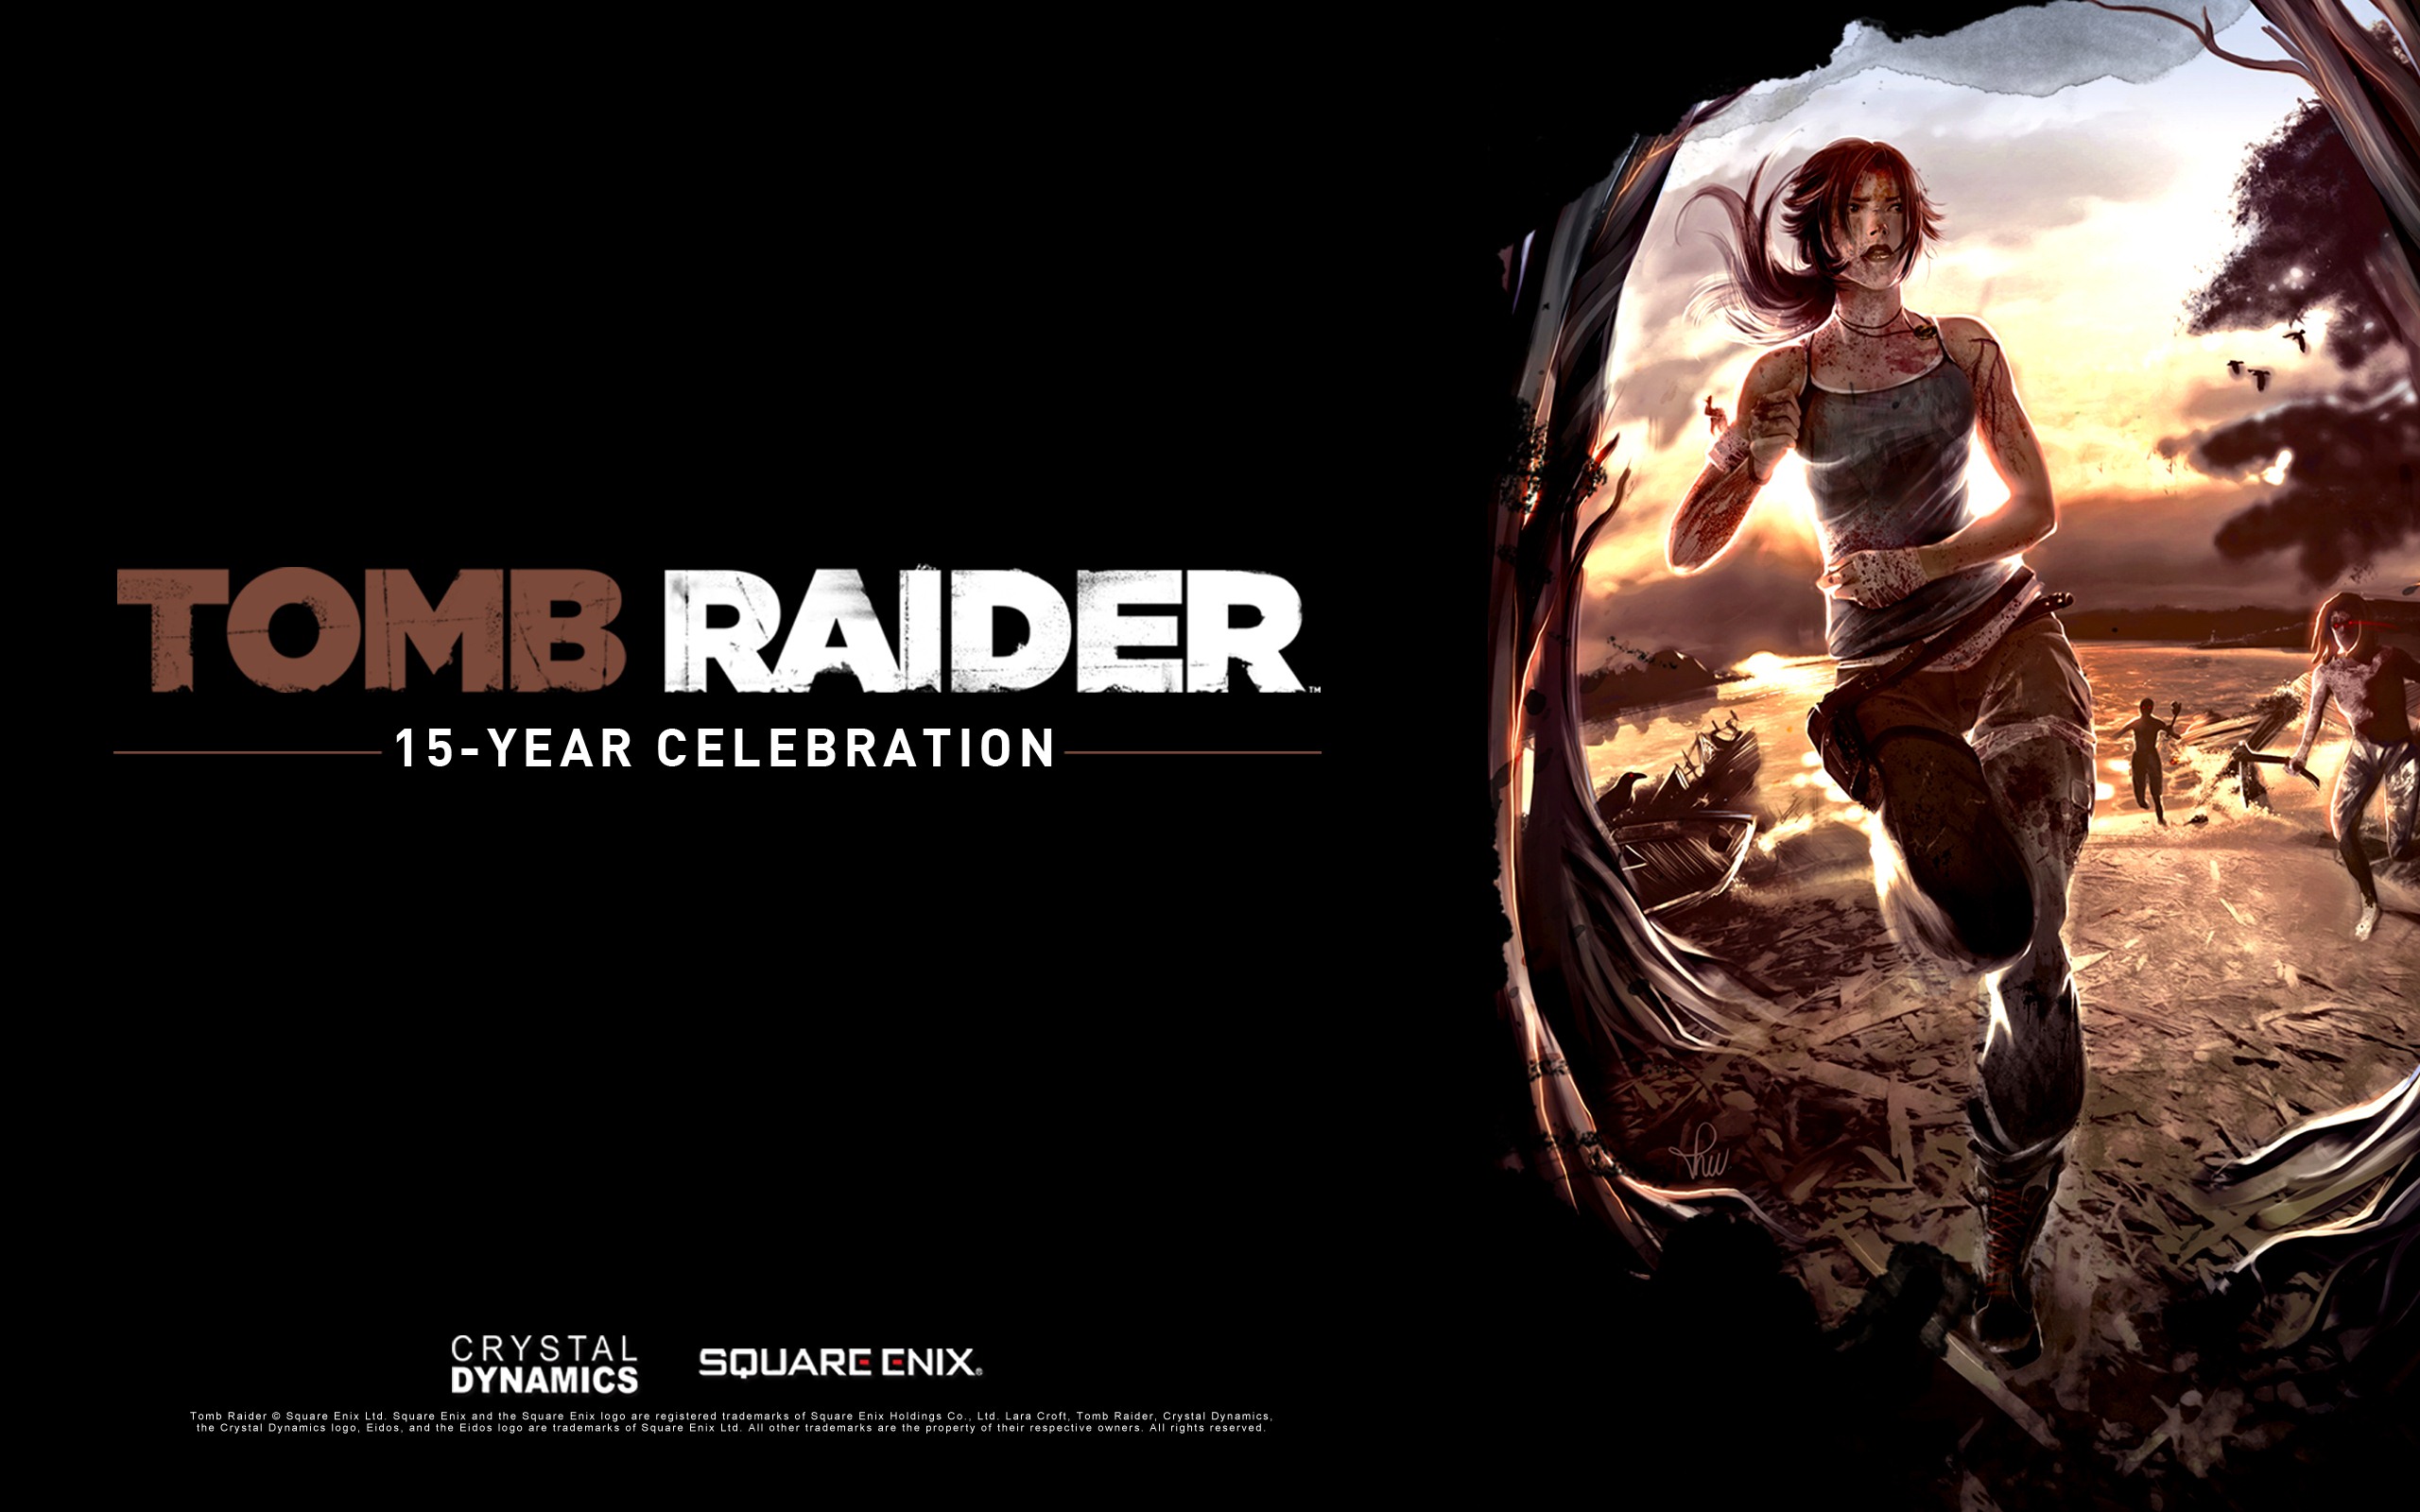 Tomb Raider 15-Year Celebration 古墓丽影15周年纪念版 高清壁纸8 - 2560x1600